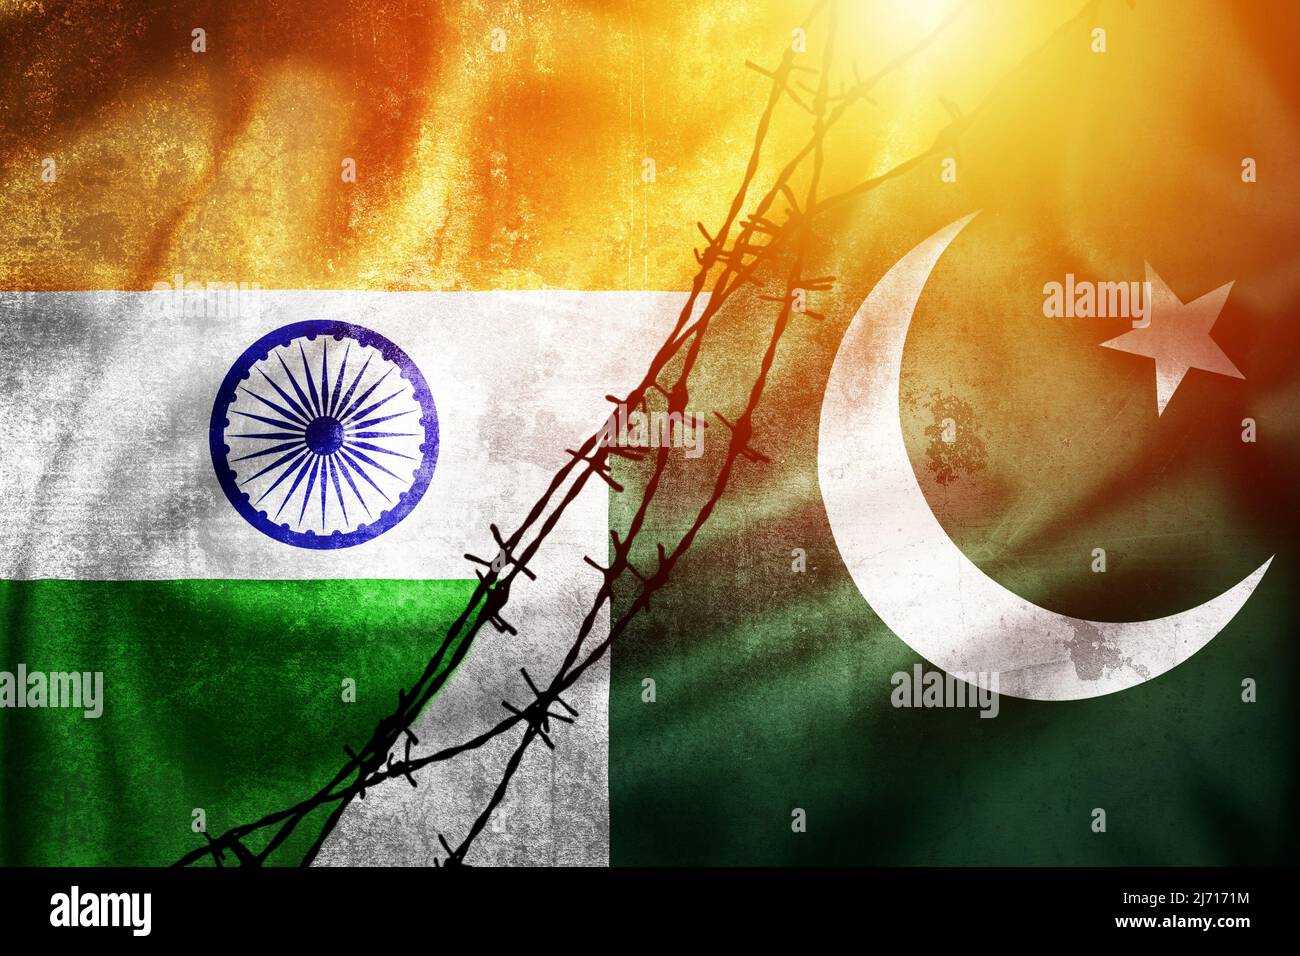 Bandiere grunge di India e Pakistan divise da disegno del sole di fienile del filo, concetto di relazioni tese fra India e Pakistan Foto Stock